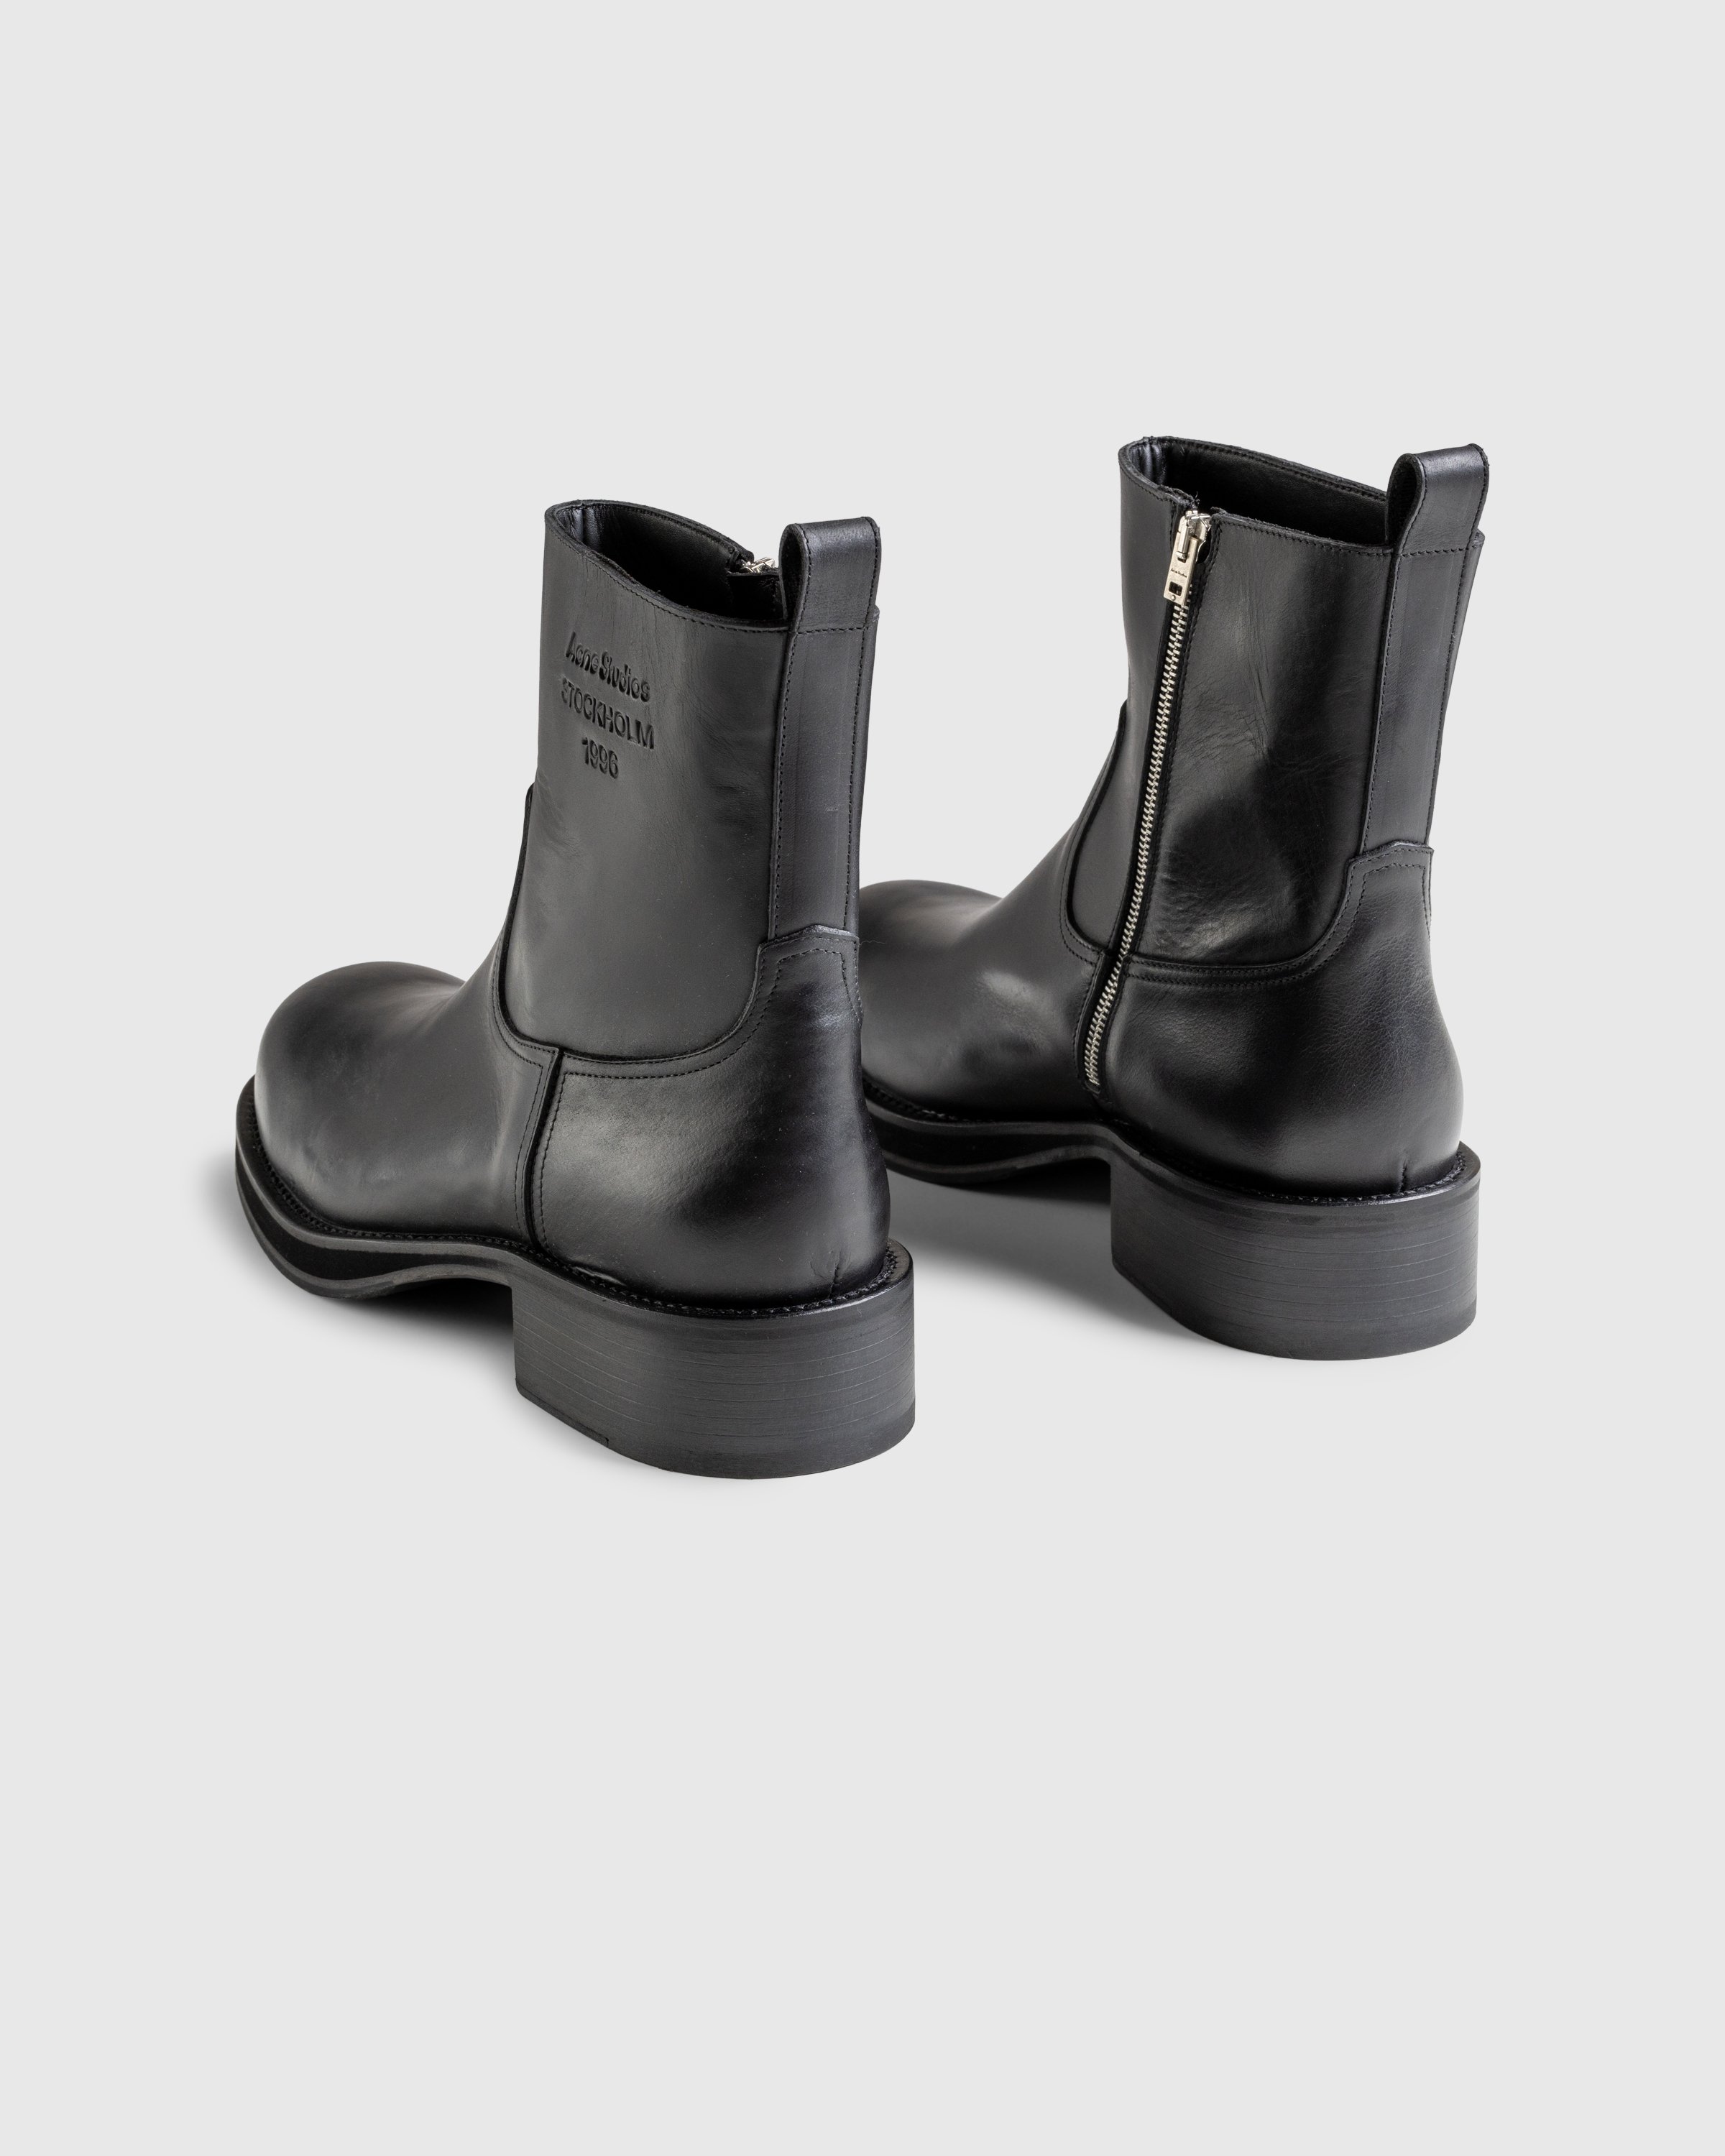 Acne Studios - FN-MN-SHOE000280 BLACK - Footwear - Black - Image 4